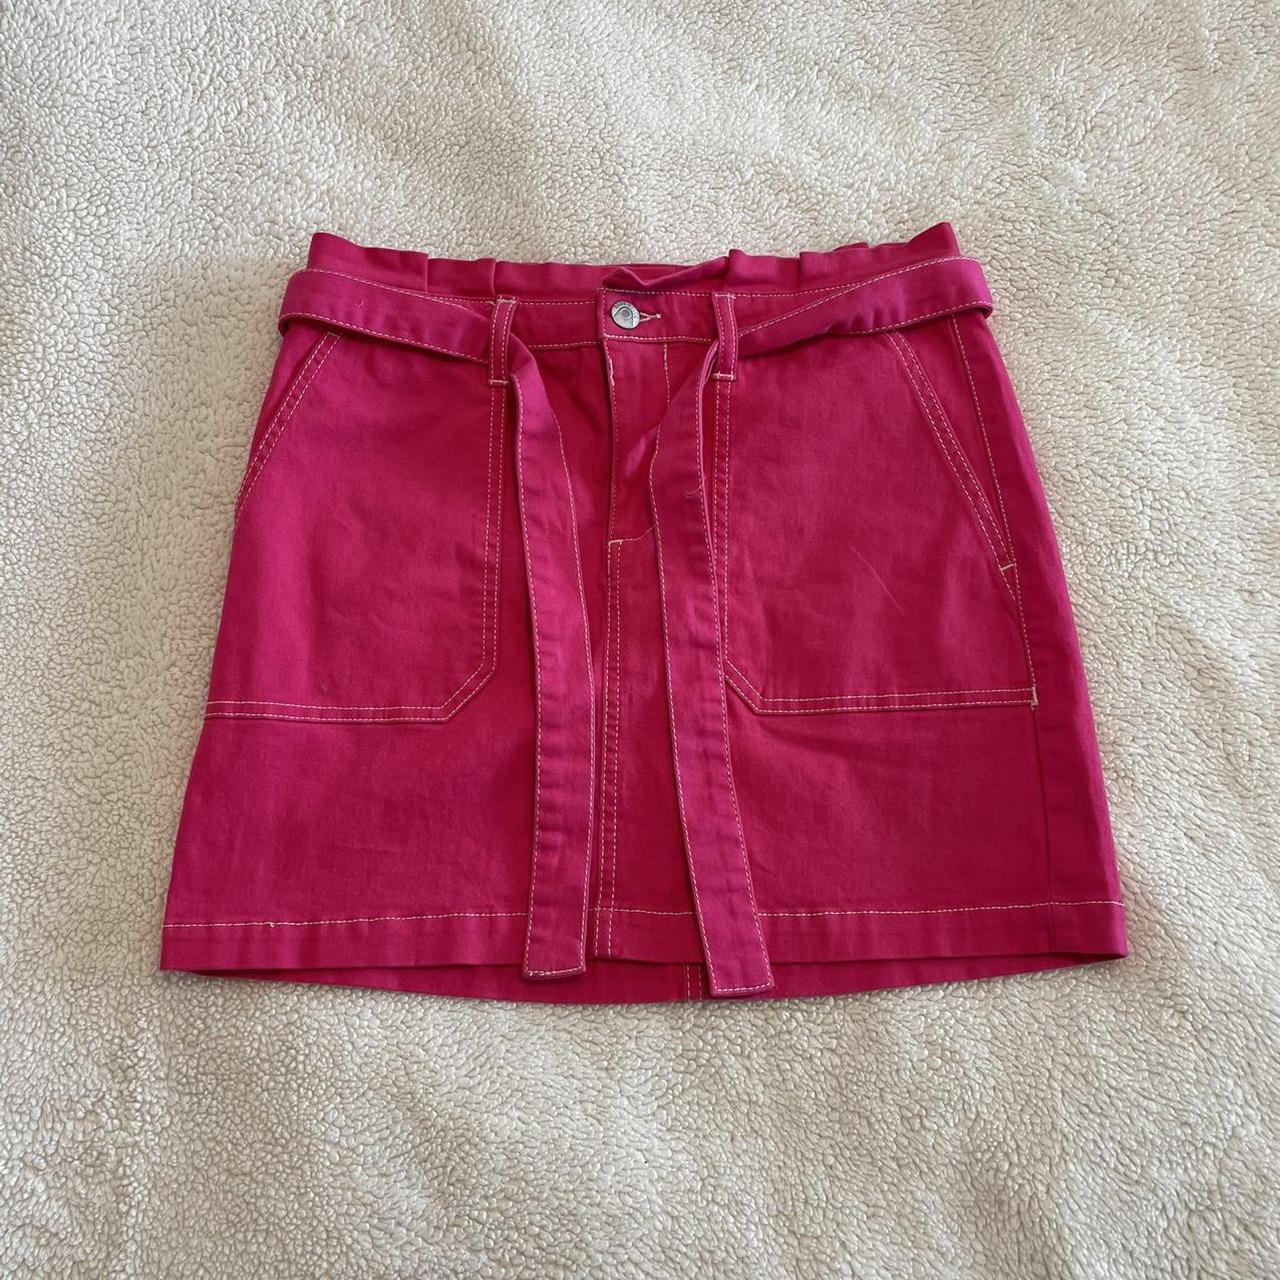 ☆ pink cargo mini skirt ☆   DM FOR BUNDLE... - Depop